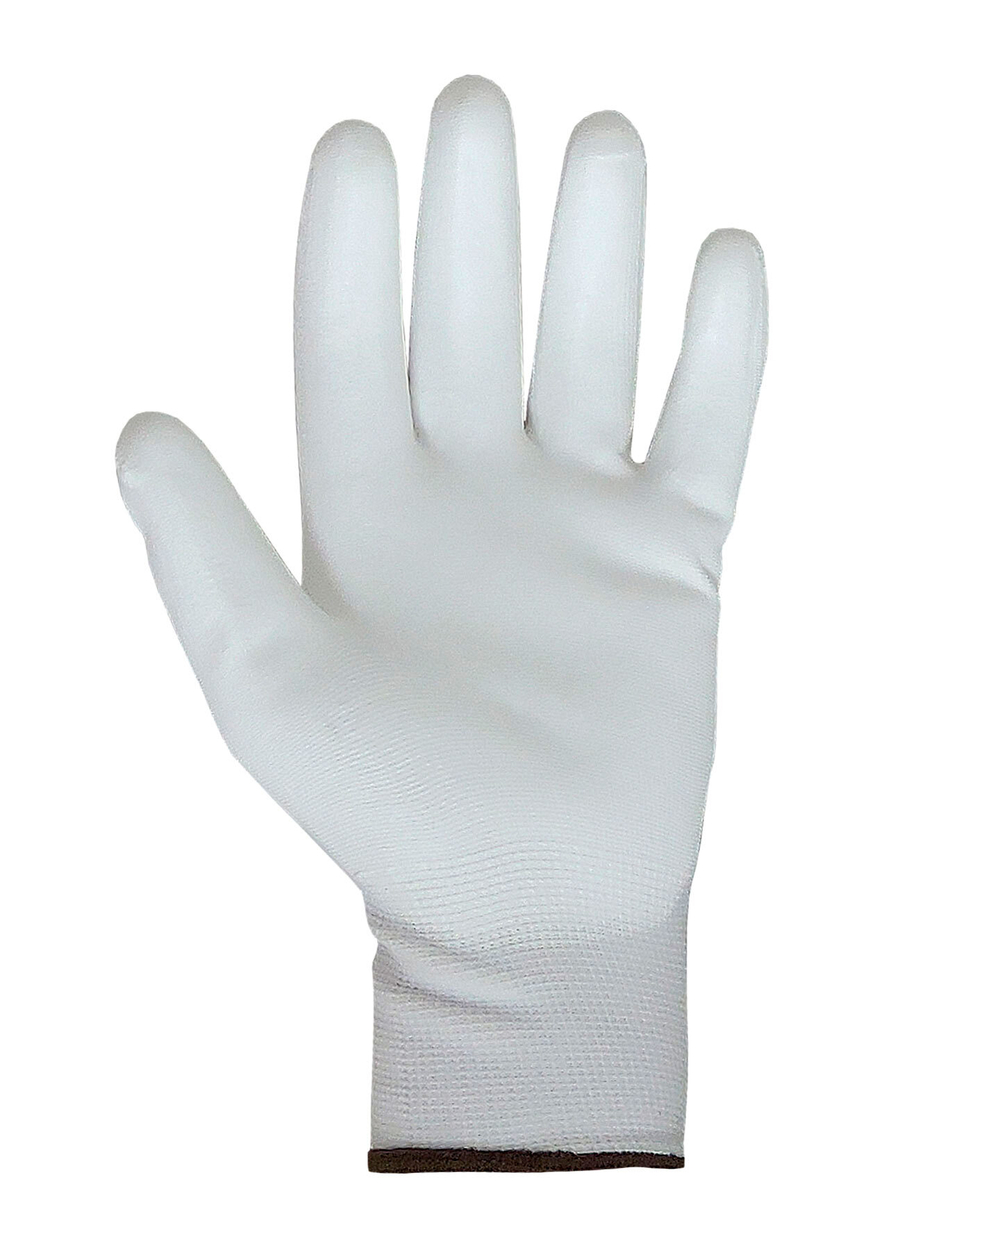 Перчатки Safeprotect НейпПол-Б (нейлон+полиуретан, белый) (х12х300)